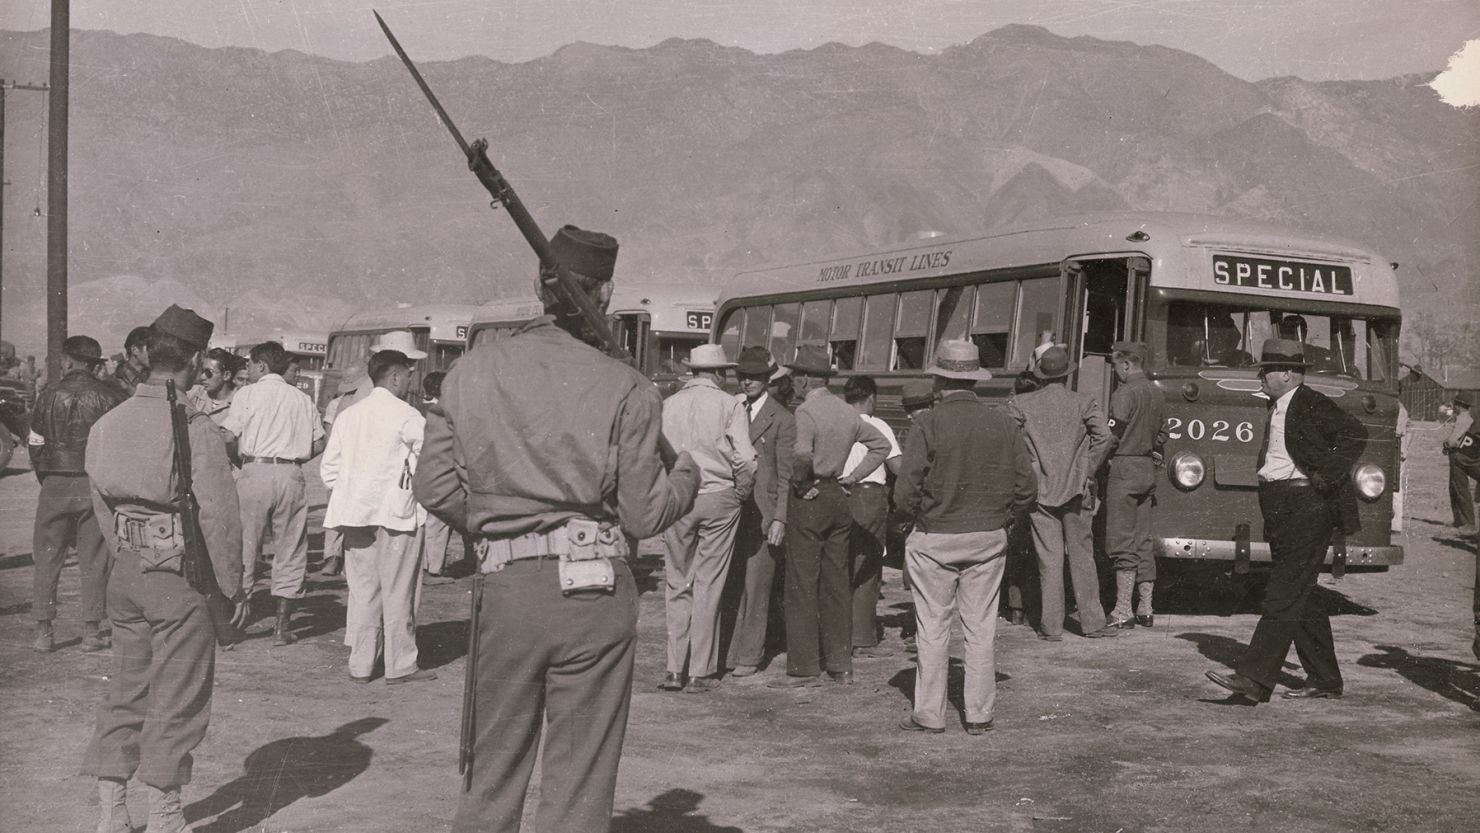 A scene from the Manzanar internment camp in California in 1942. 